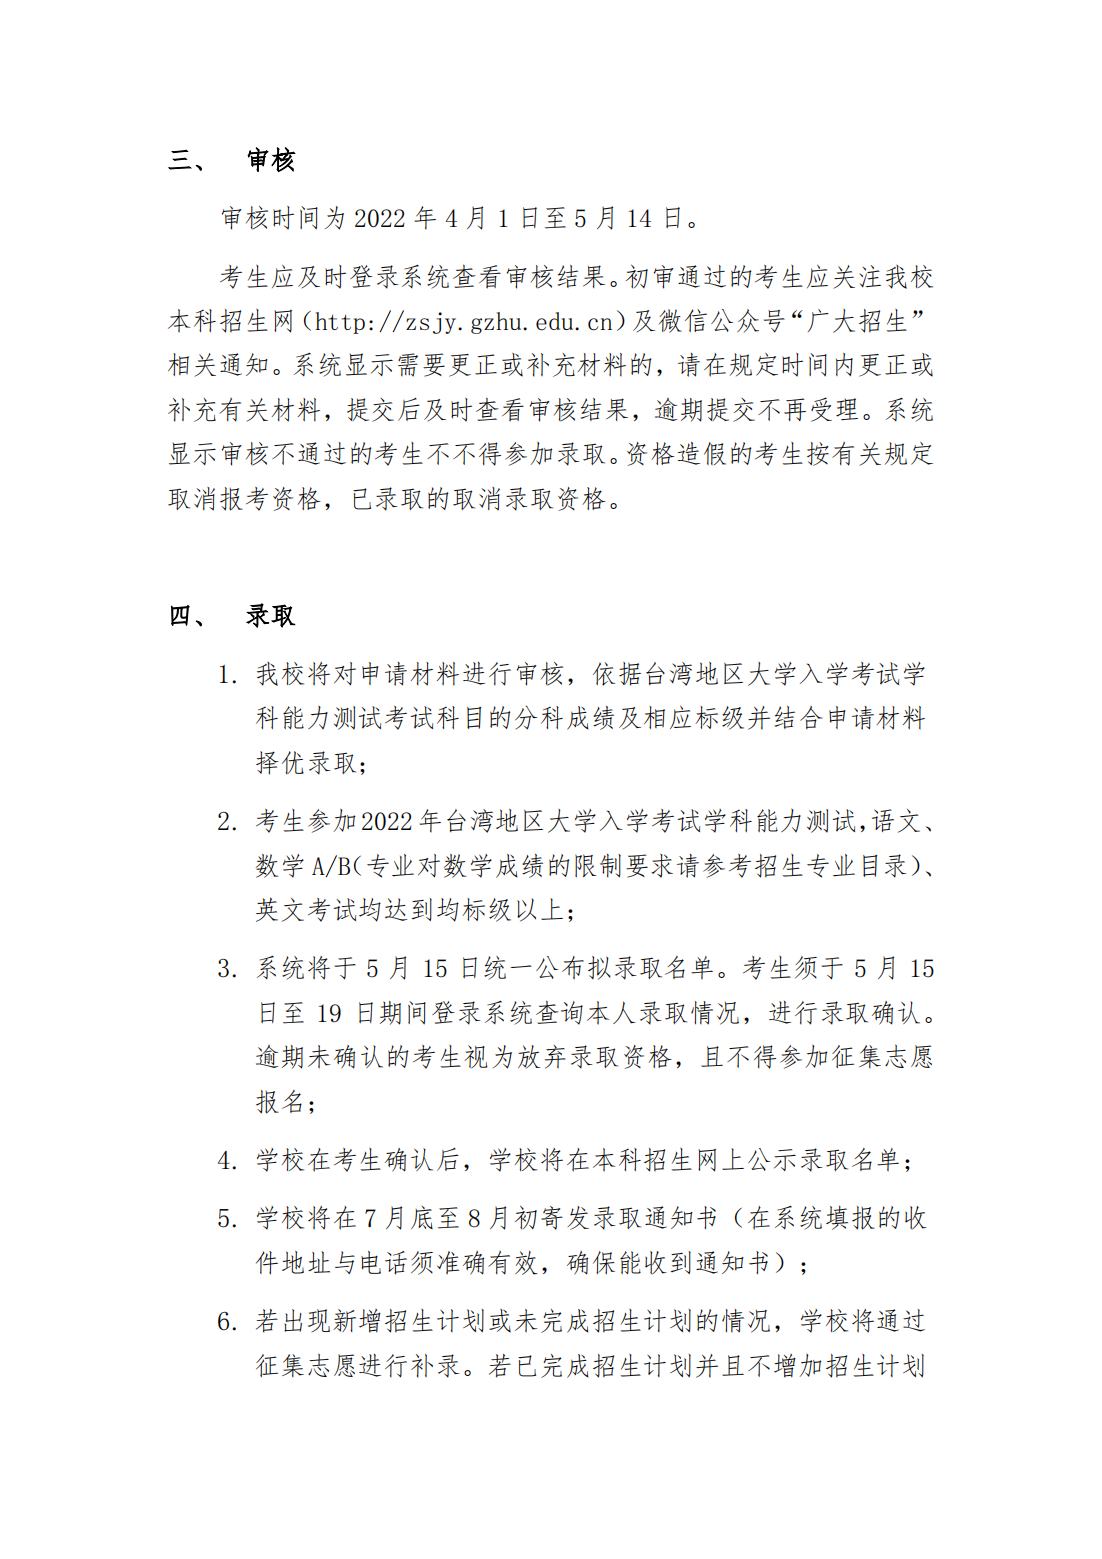 广州大学2022年依据台湾地区大学入学考试学科能力测试成绩招收台湾高中毕业生简章